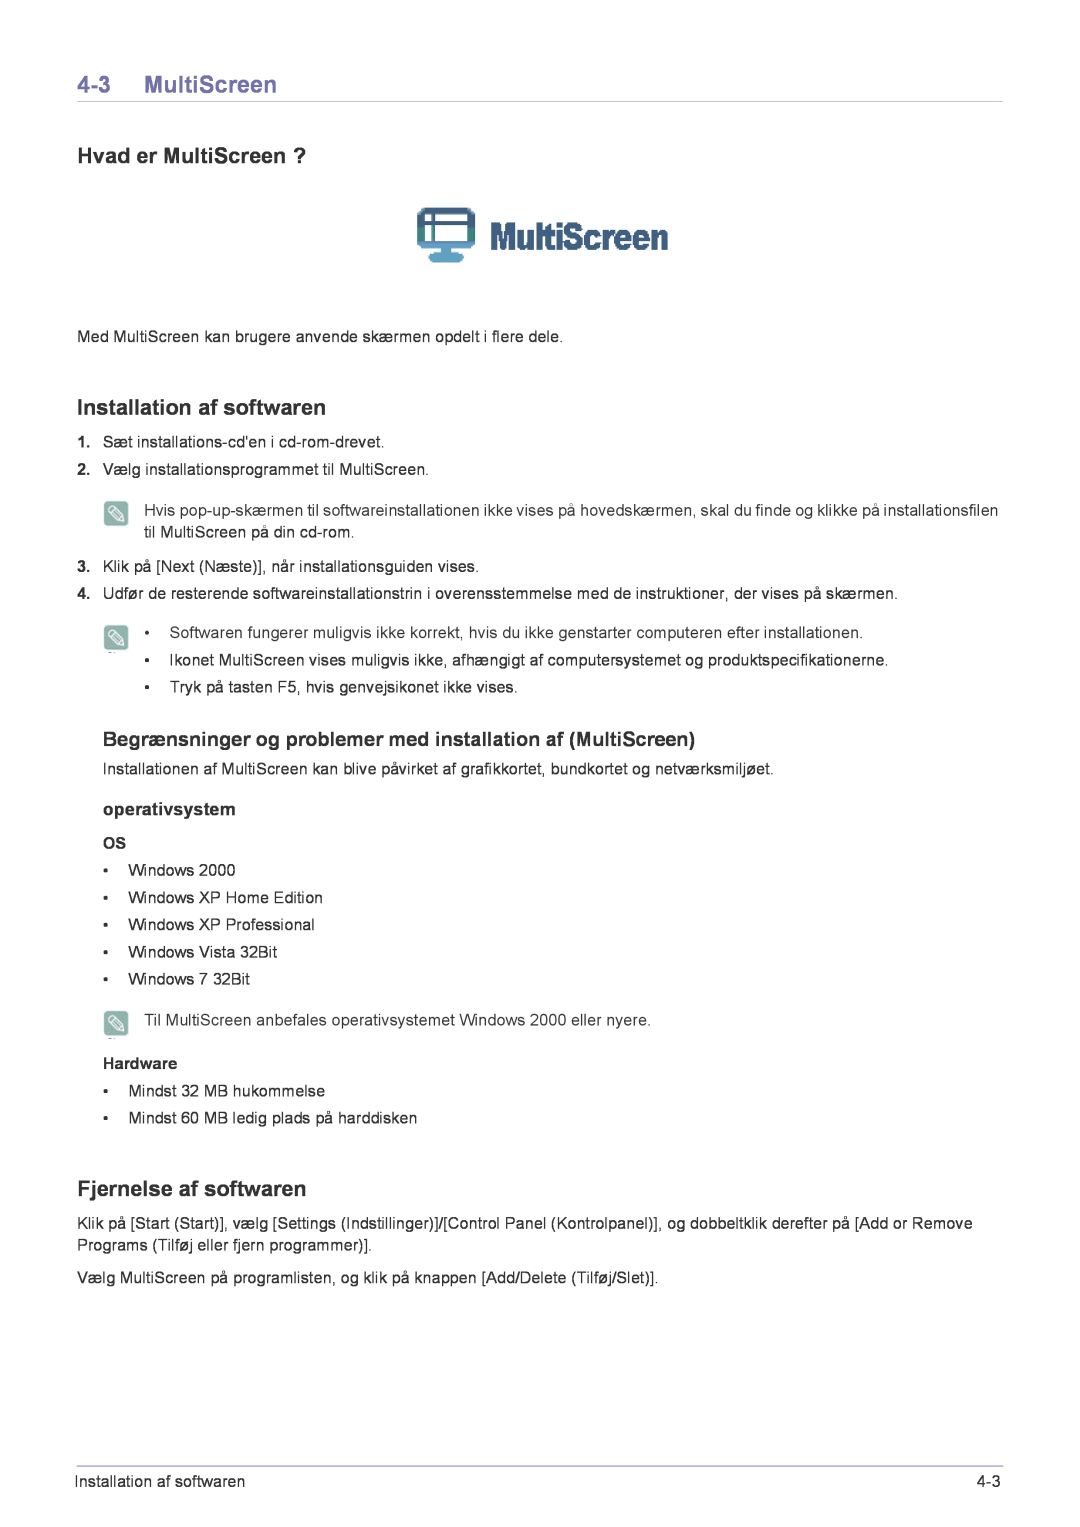 Samsung LF22NPBHBNP/EN manual Hvad er MultiScreen ?, Installation af softwaren, Fjernelse af softwaren 